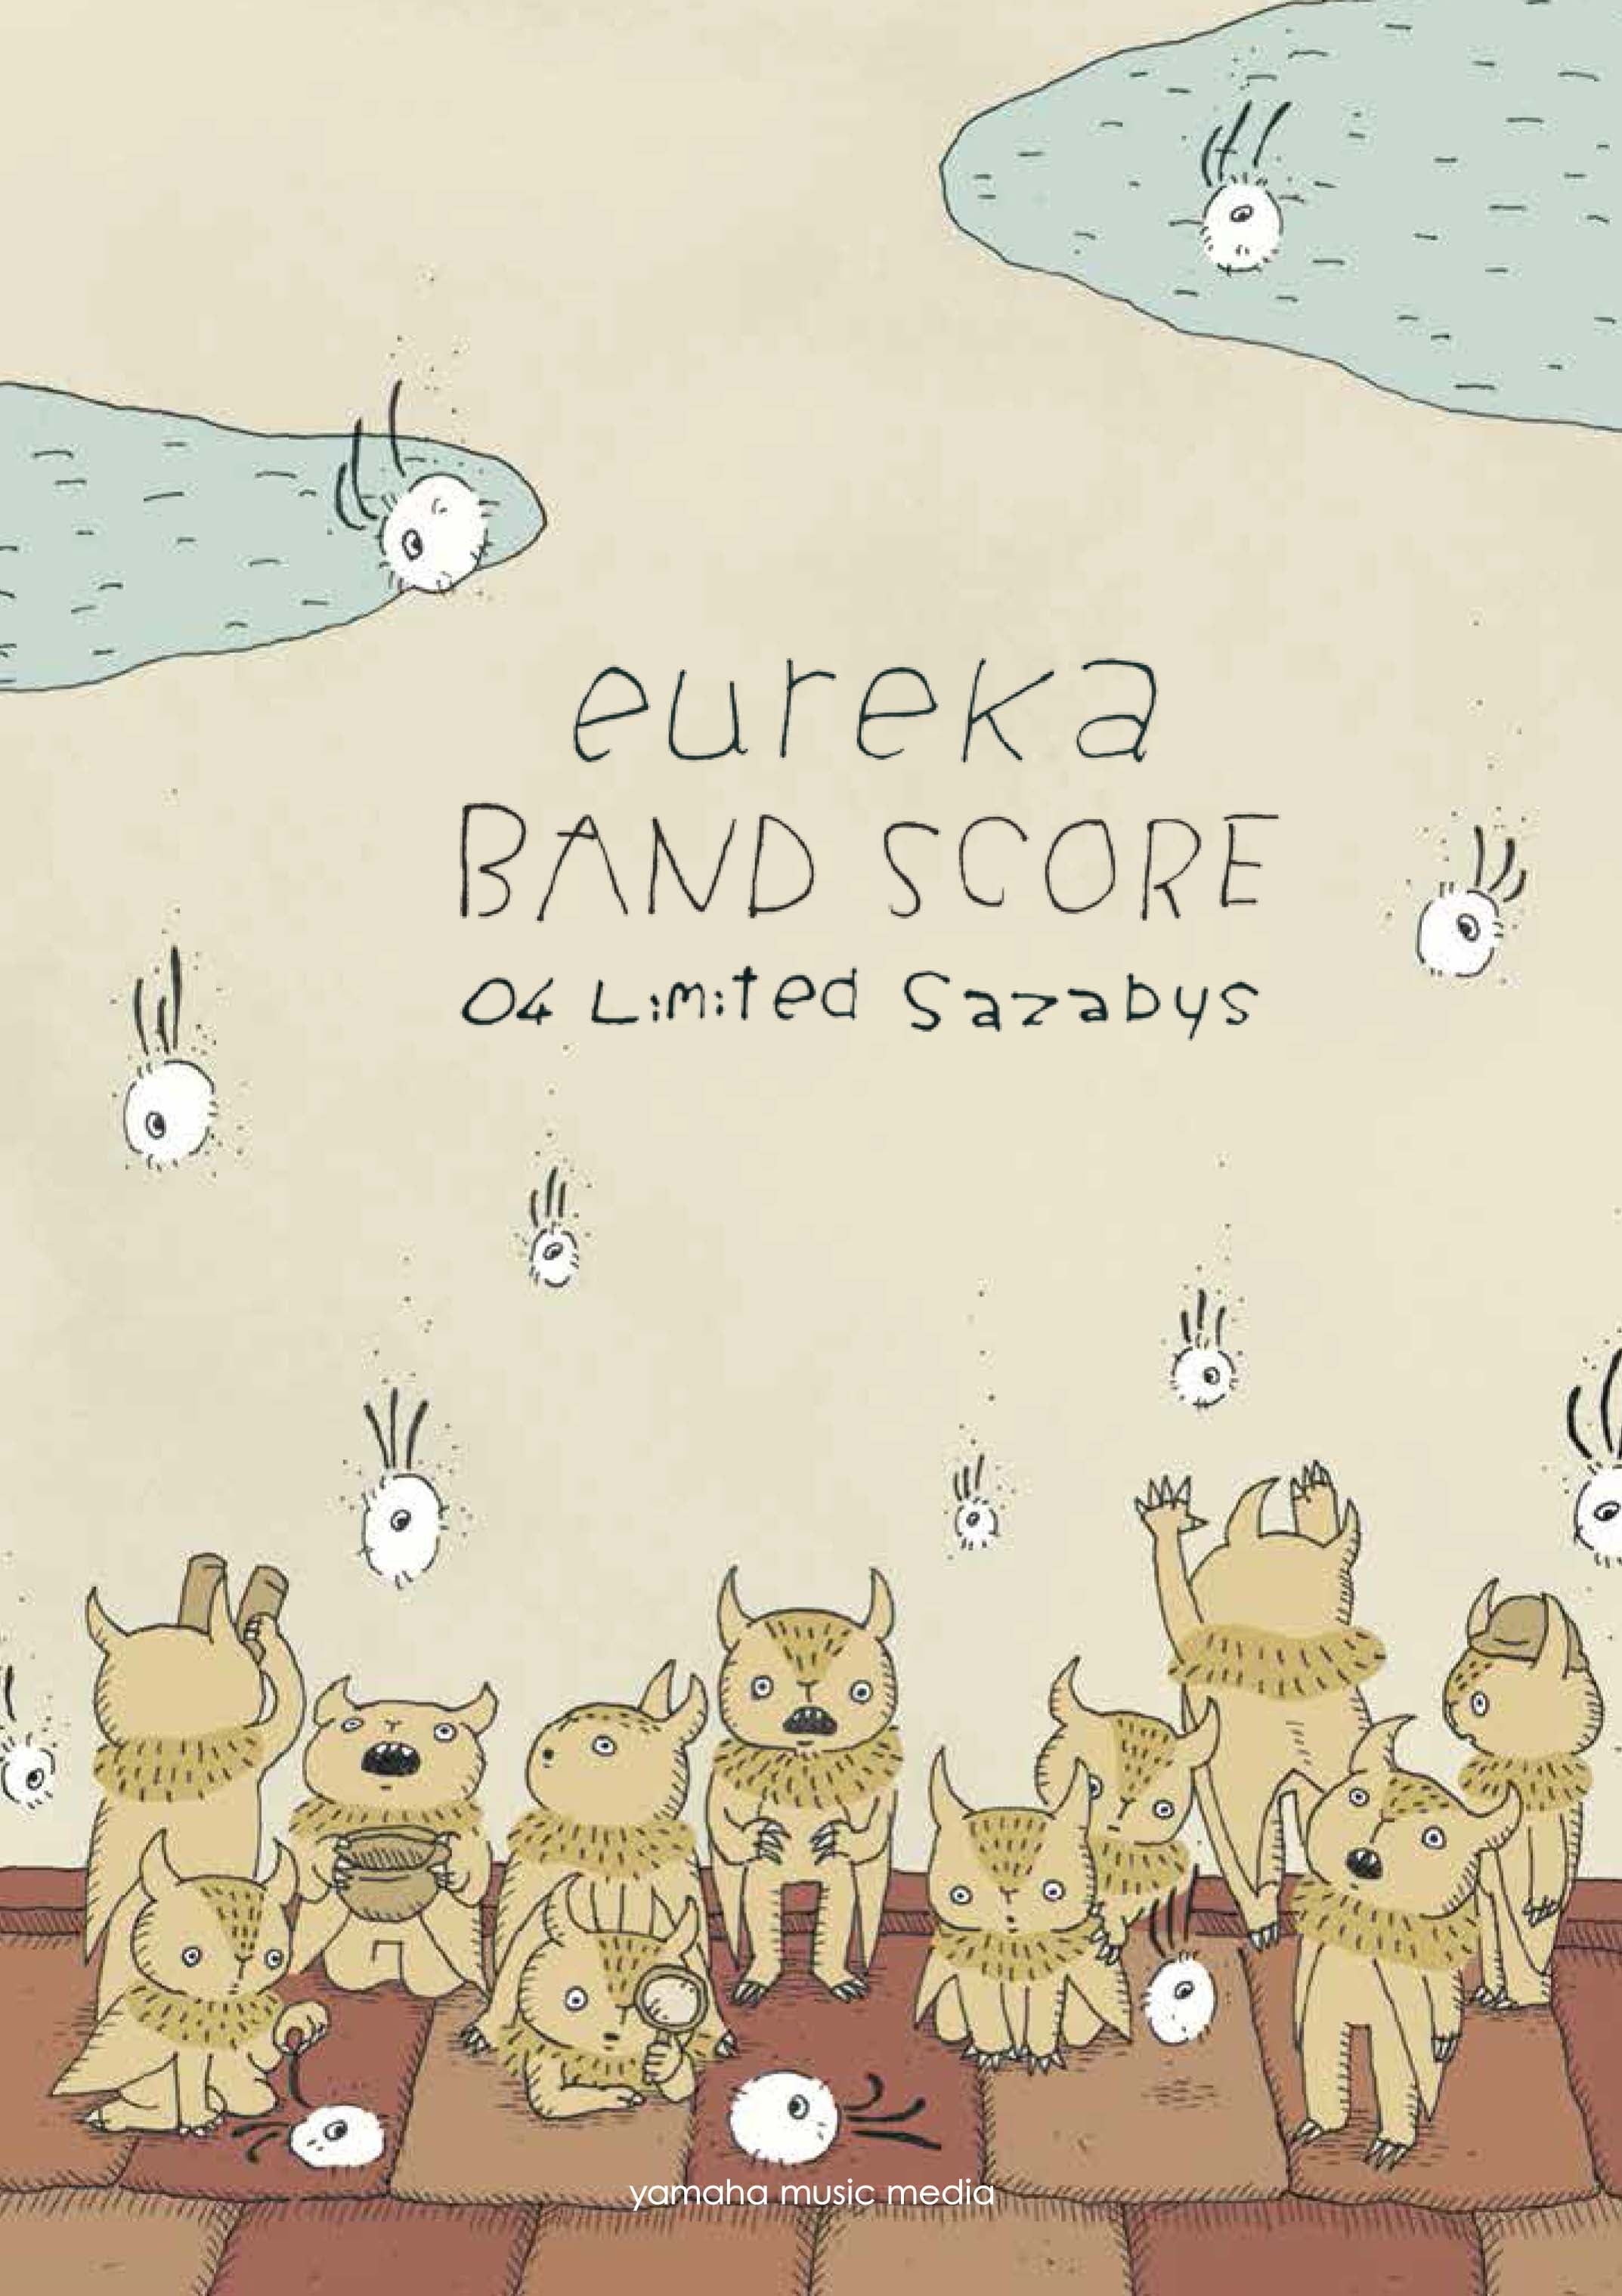 バンドスコア 04 Limited Sazabys 『eureka』 | ヤマハの楽譜通販サイト Sheet Music Store